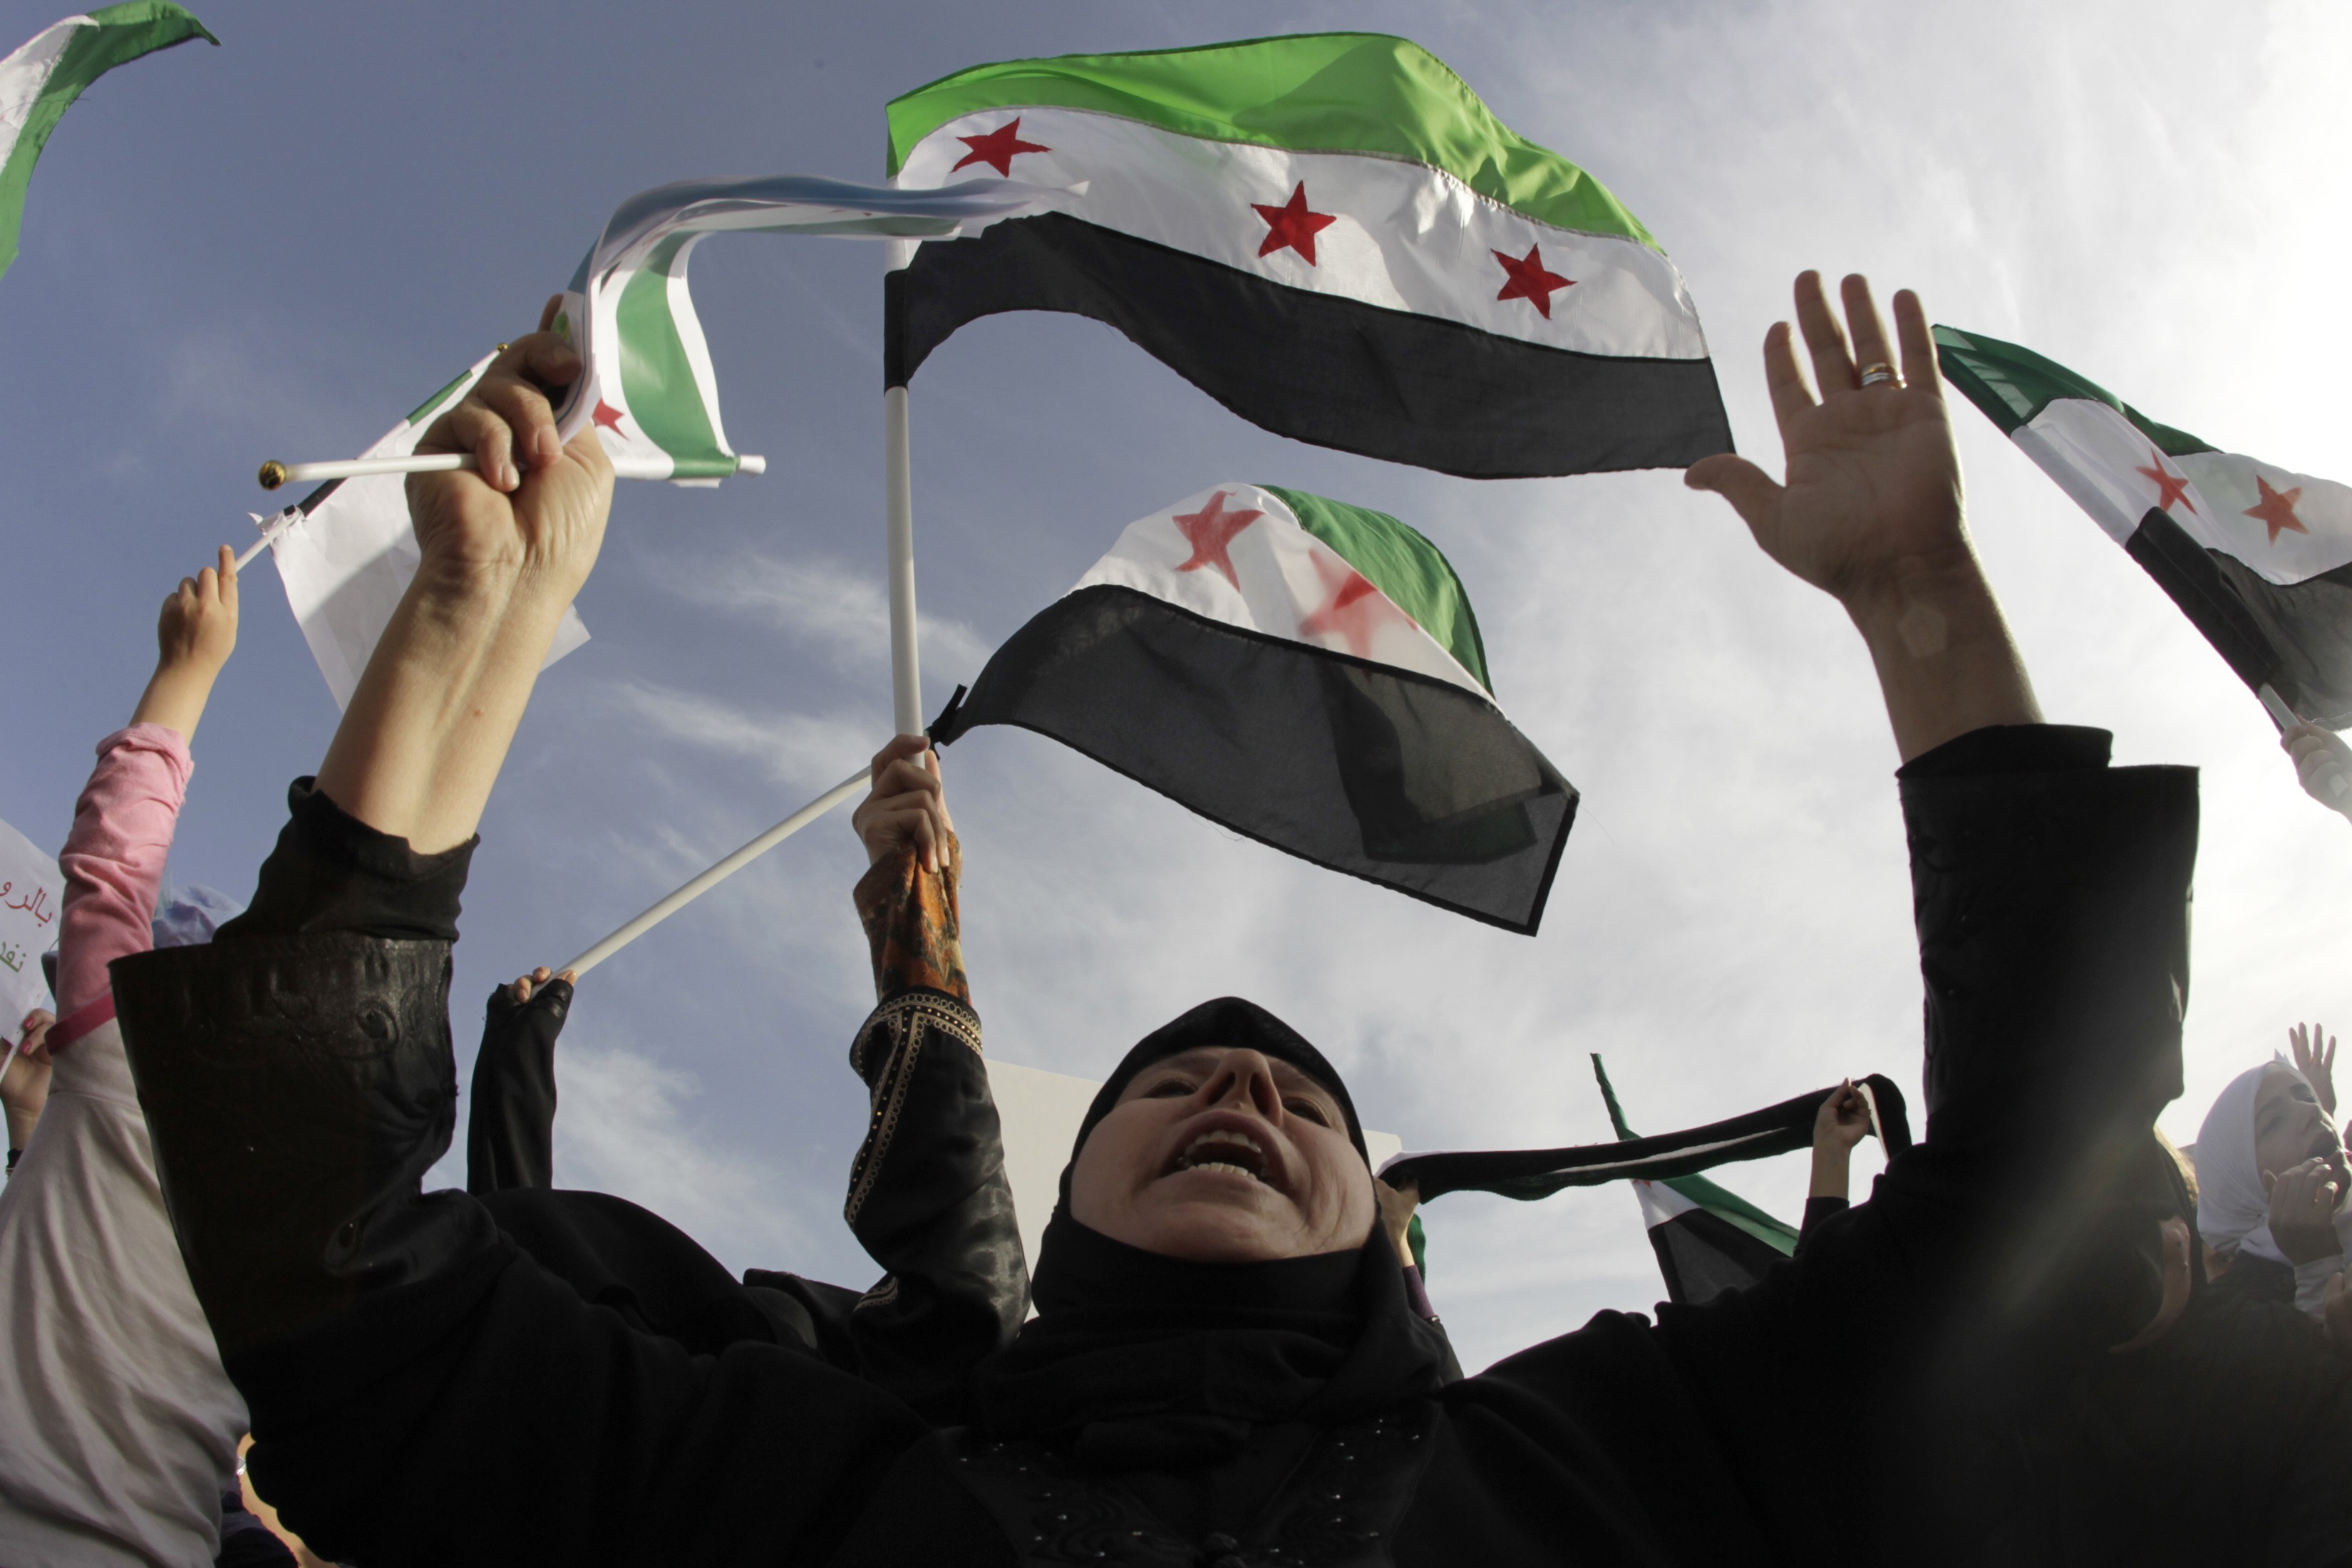 Συρία: Αναβίωση των παρατηρητών από Αραβικό σύνδεσμο και ΟΗΕ